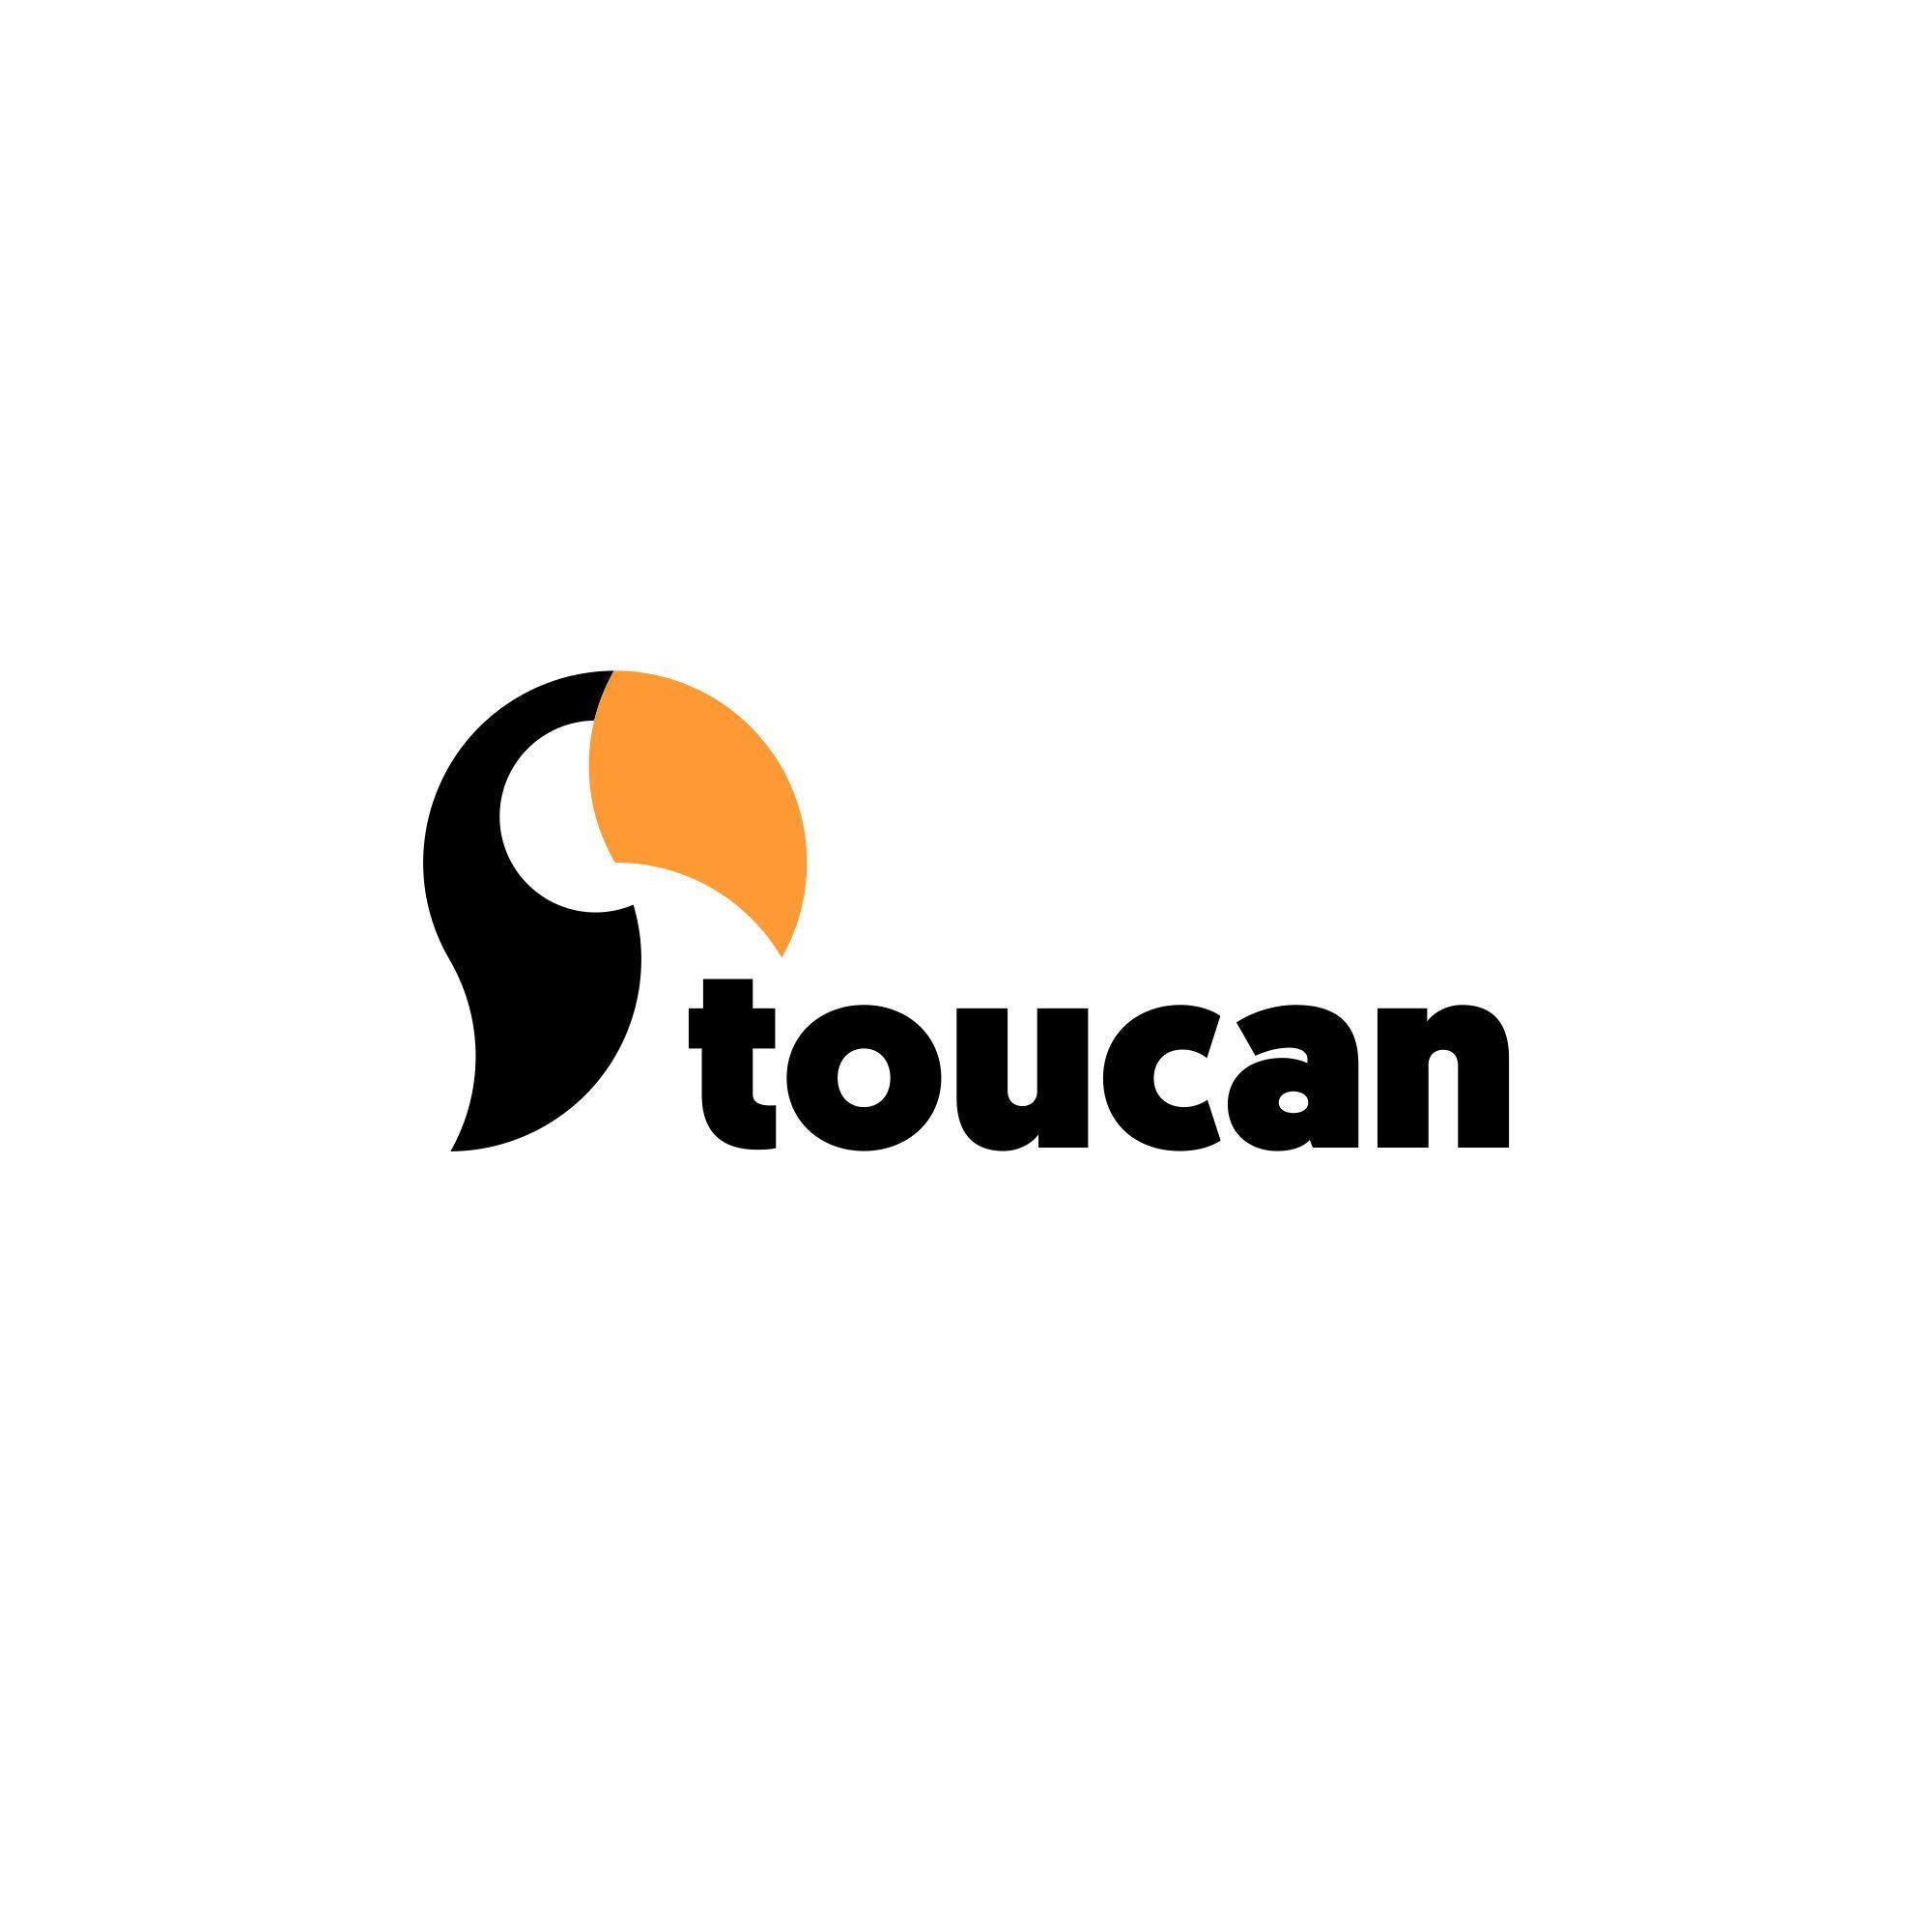 Toucan Logo - Toucan logo - designed for an online printing service. Logo design ...